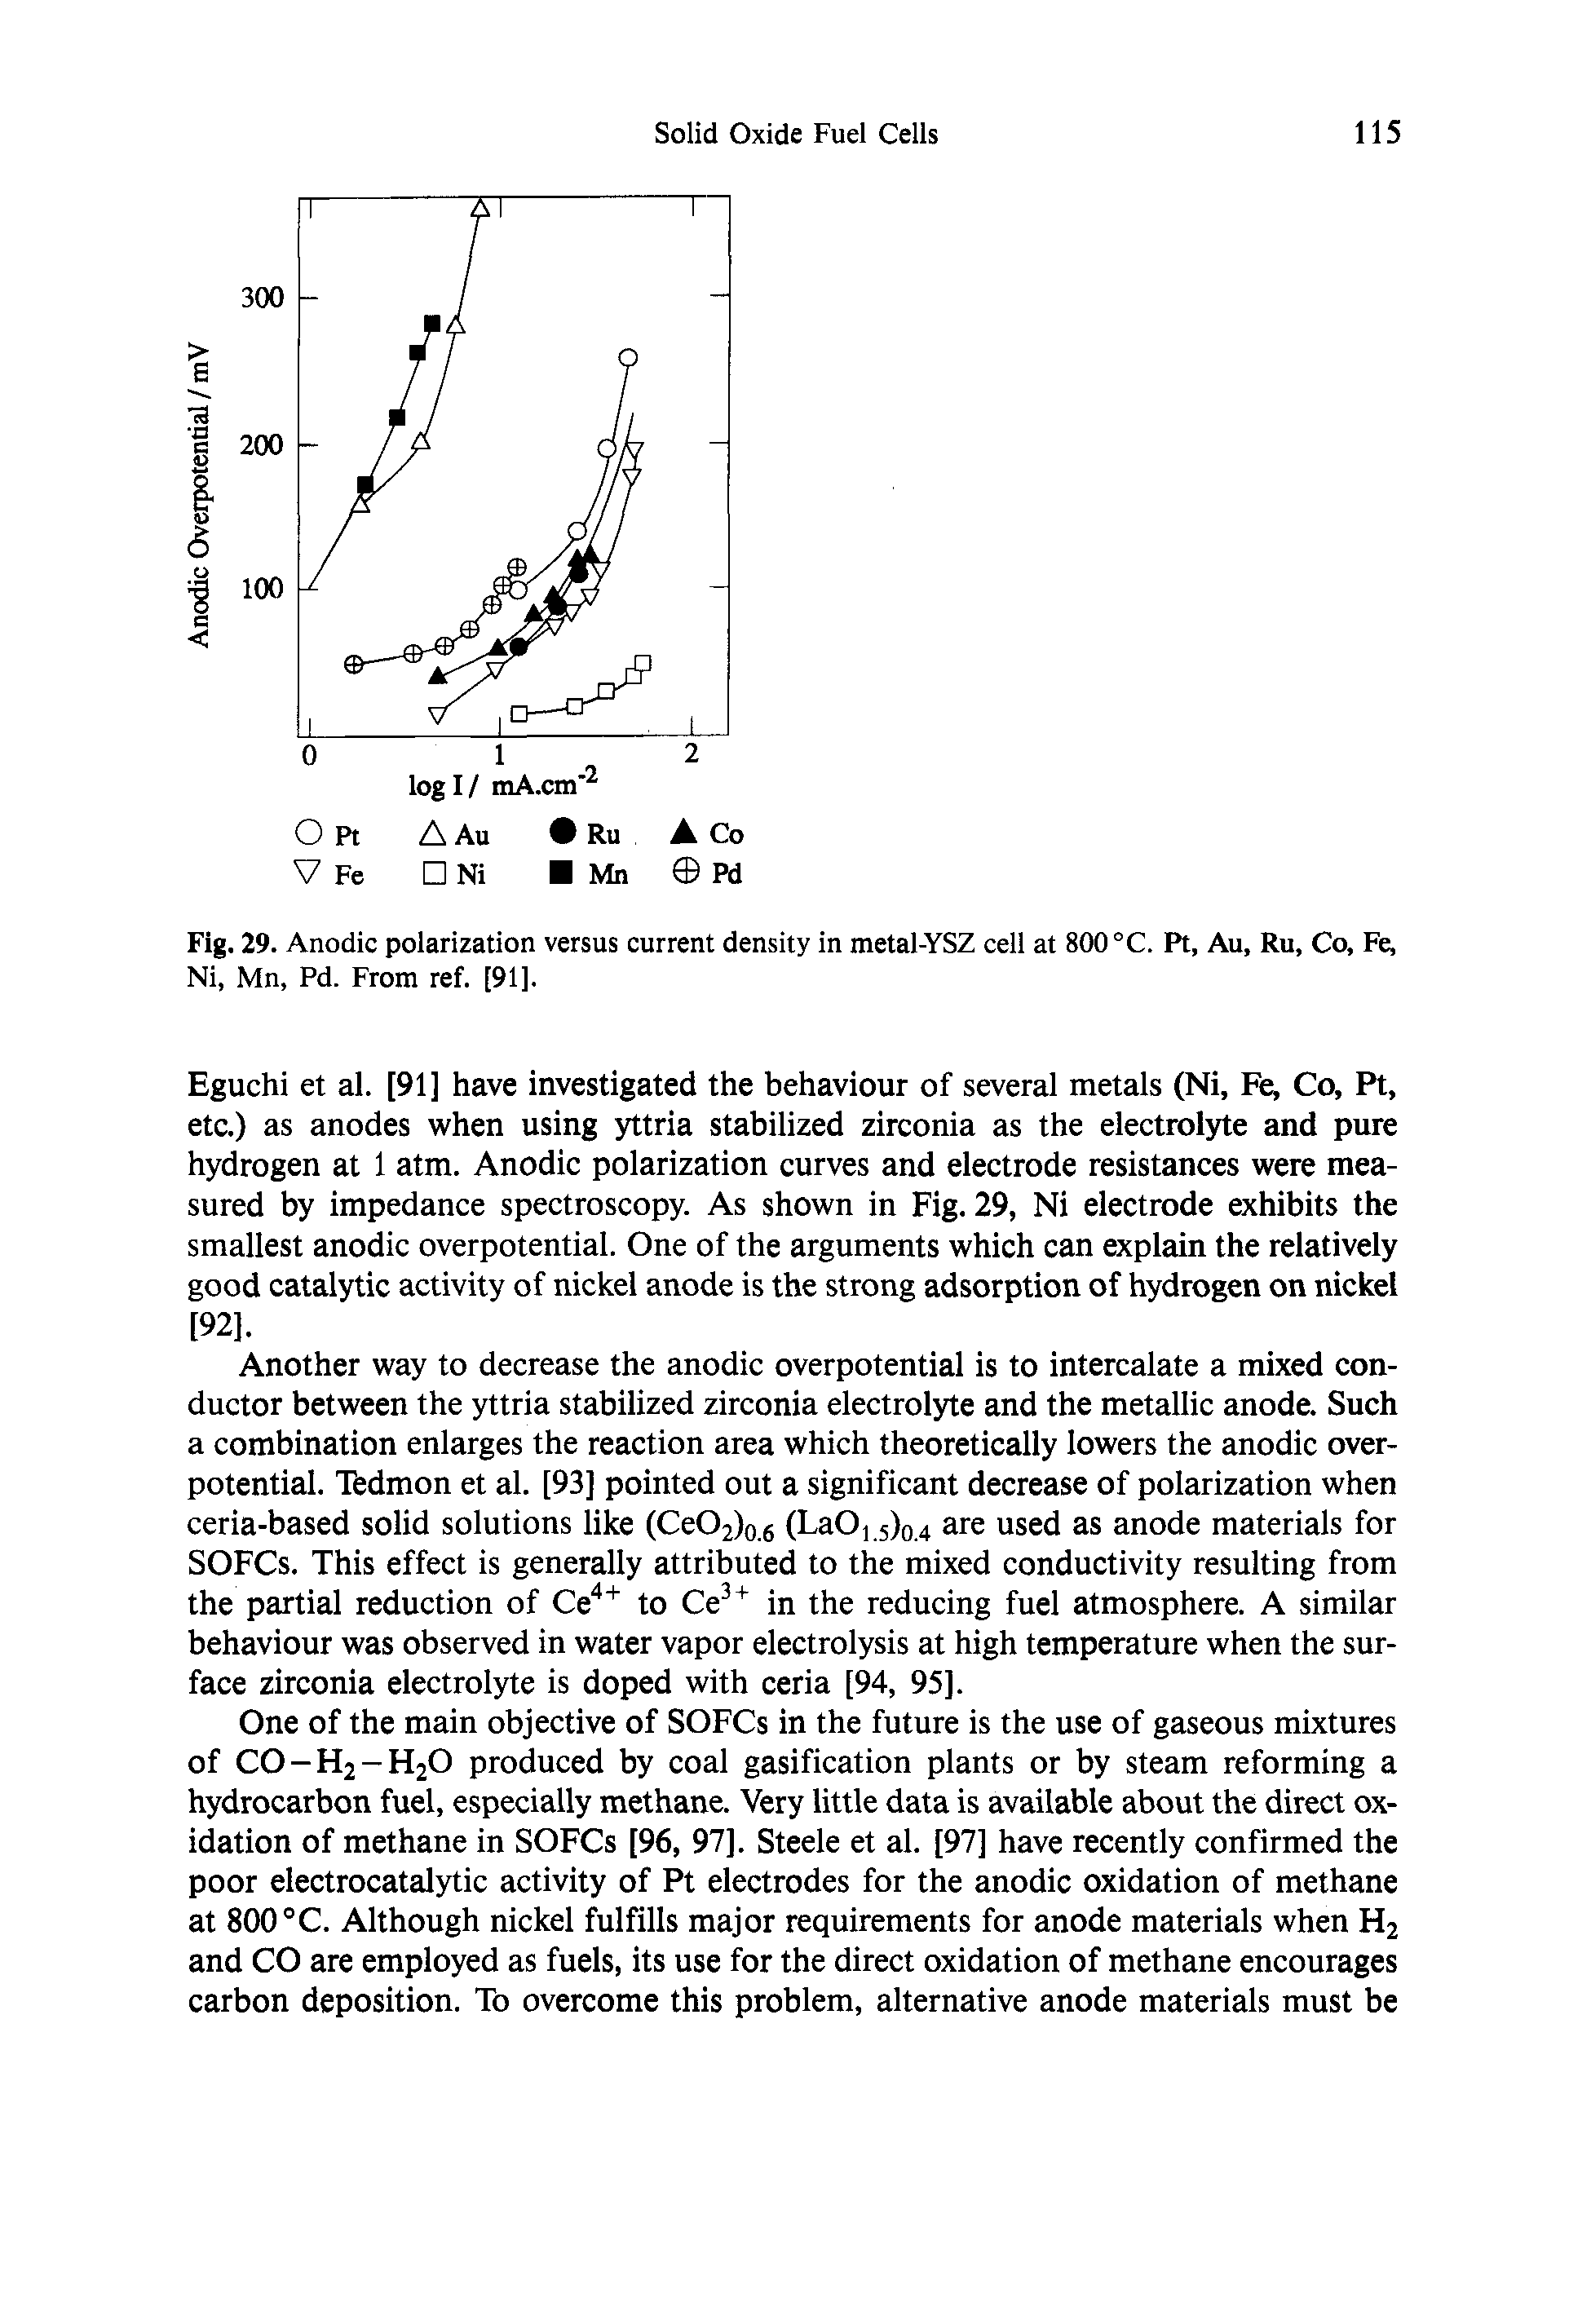 Fig. 29. Anodic polarization versus current density in metal-YSZ cell at 800 °C. Pt, Au, Ru, Co, Fe, Ni, Mn, Pd. From ref. [91].